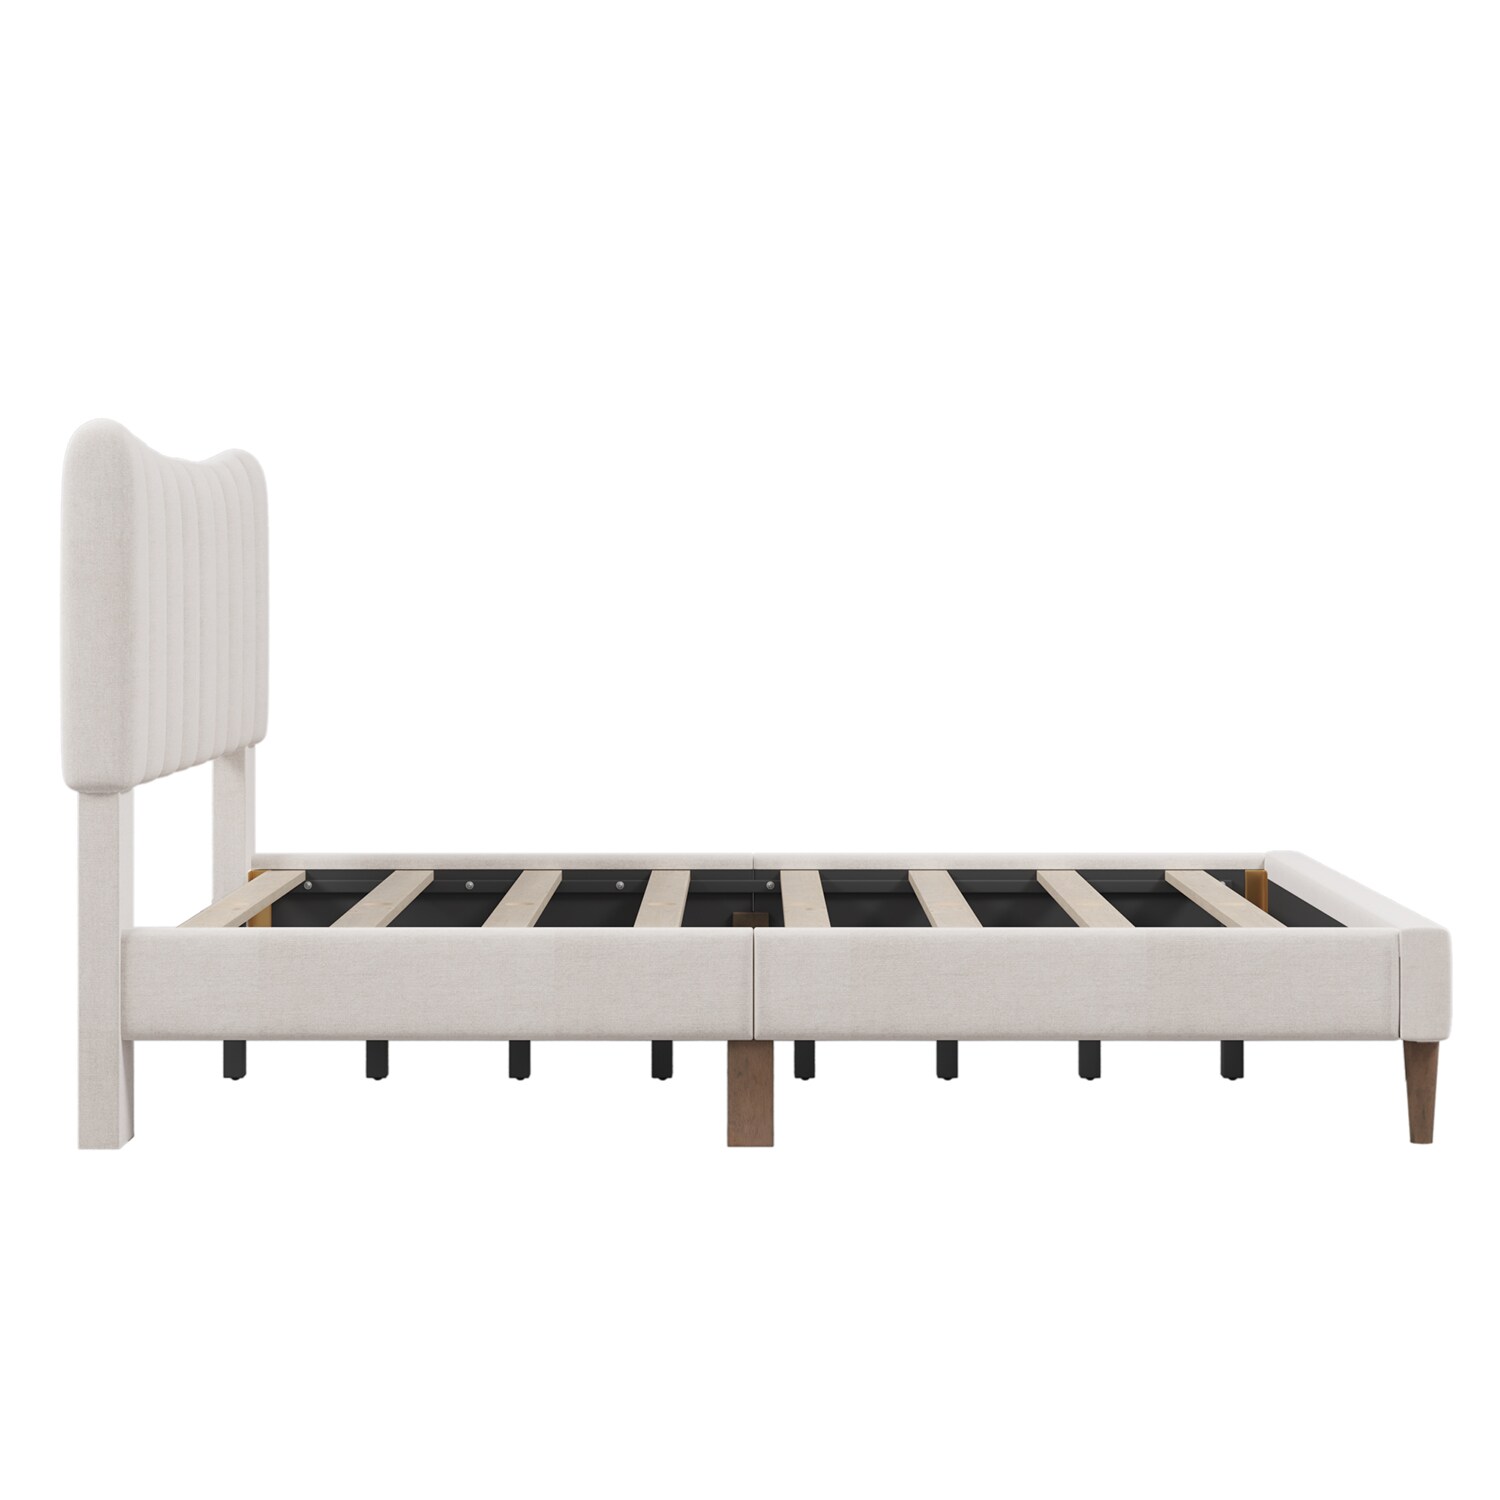 GZMR Full Upholstered Platform Bed Frame Beige Full Wood Bed Frame in ...